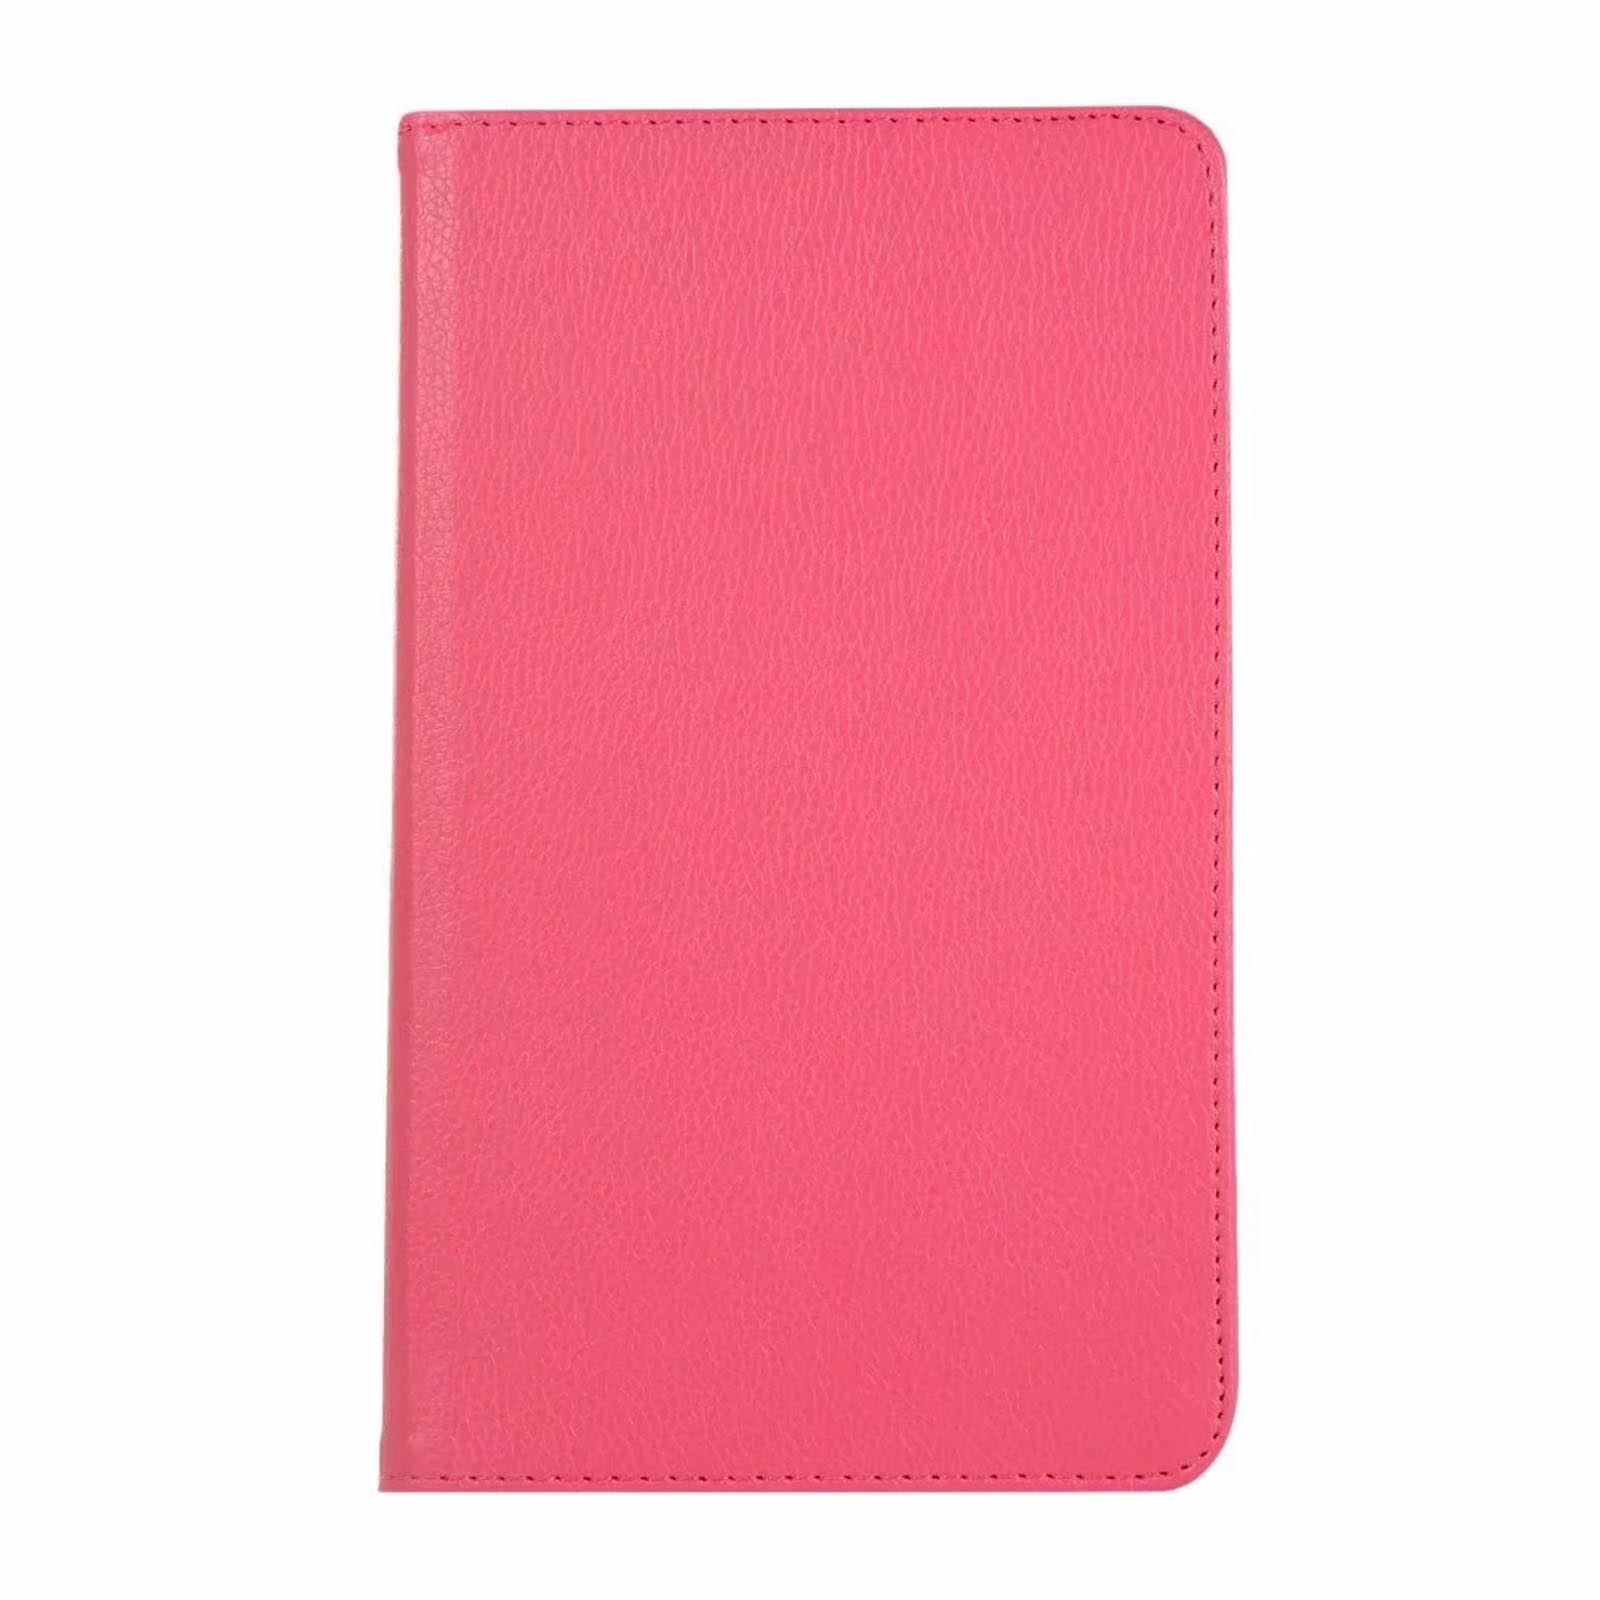 8.0 Bookcover Schutzhülle A Tab Hülle Pink Samsung Zoll Galaxy 8 LOBWERK für Kunstleder, SM-T290 SM-T295